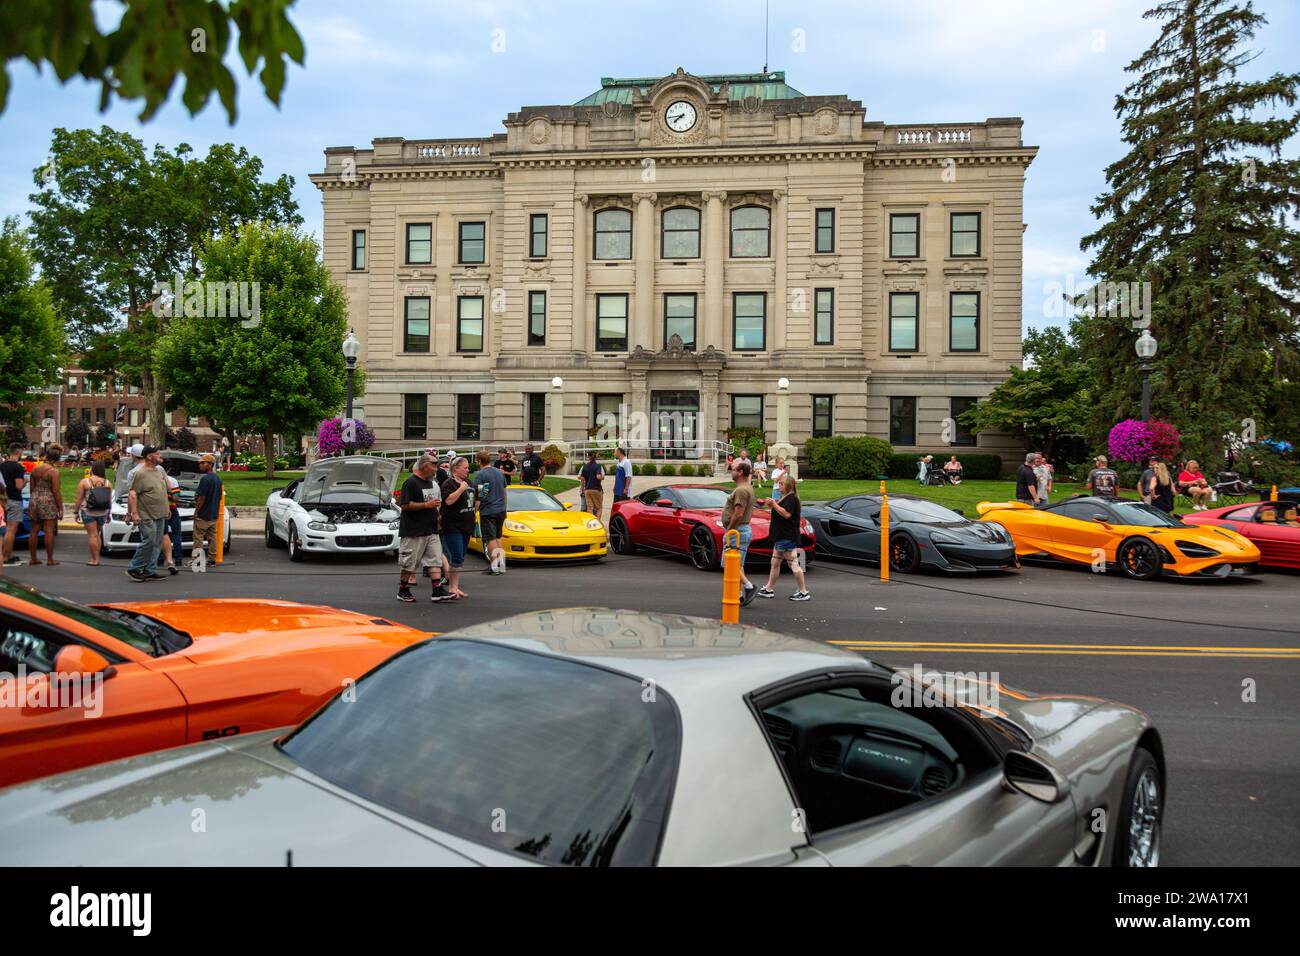 Auto sportive in mostra nell'ambito della mostra di auto veloci e favolose del 2022 presso il tribunale della contea di DeKalb nel centro di Auburn, Indiana, Stati Uniti. Foto Stock